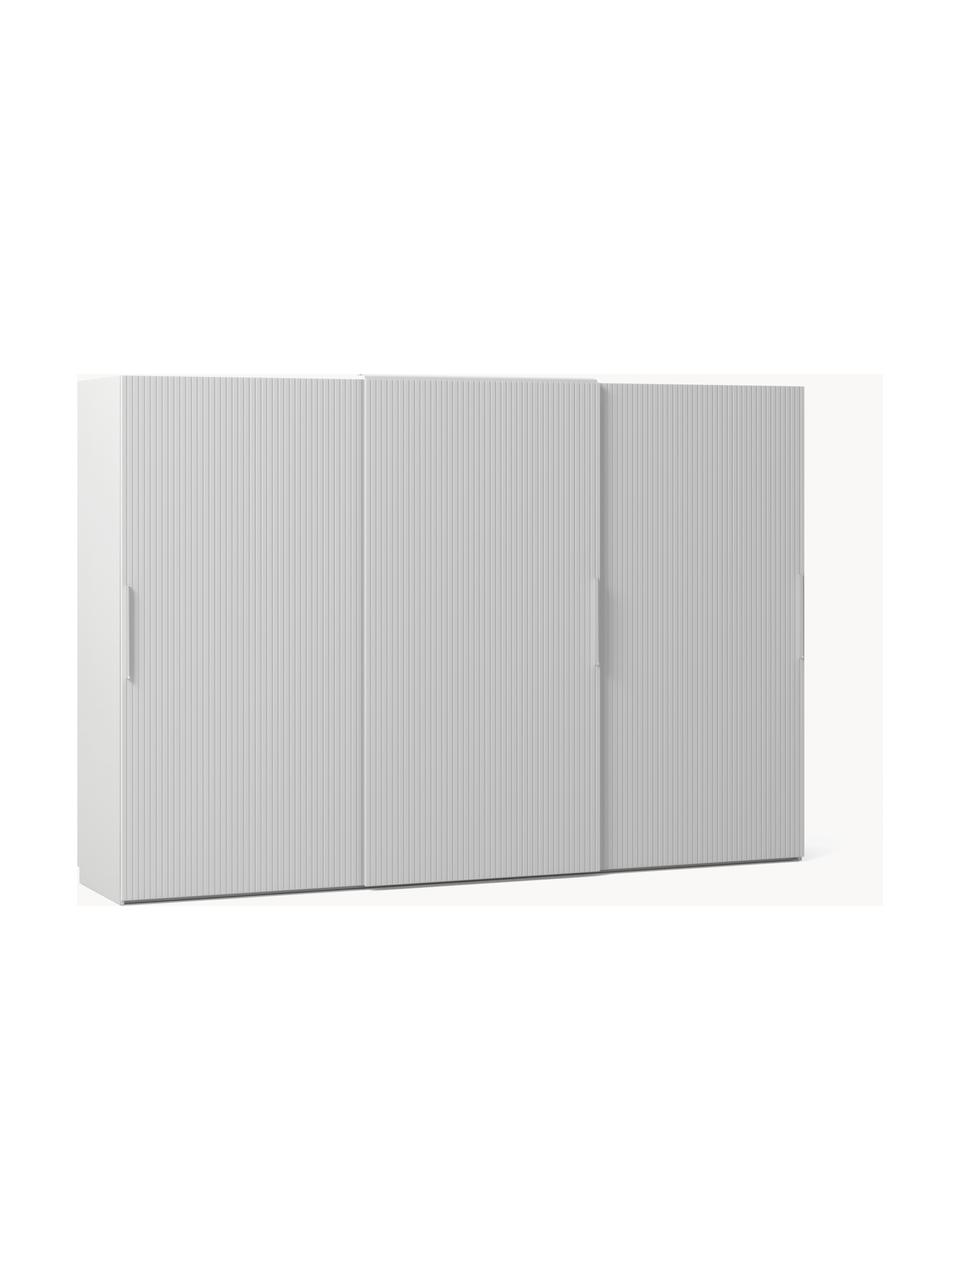 Modulární šatní skříň s posuvnými dveřmi Simone, šířka 300 cm, různé varianty, Dřevo, šedá, Interiér Basic, Š 300 x V 200 cm